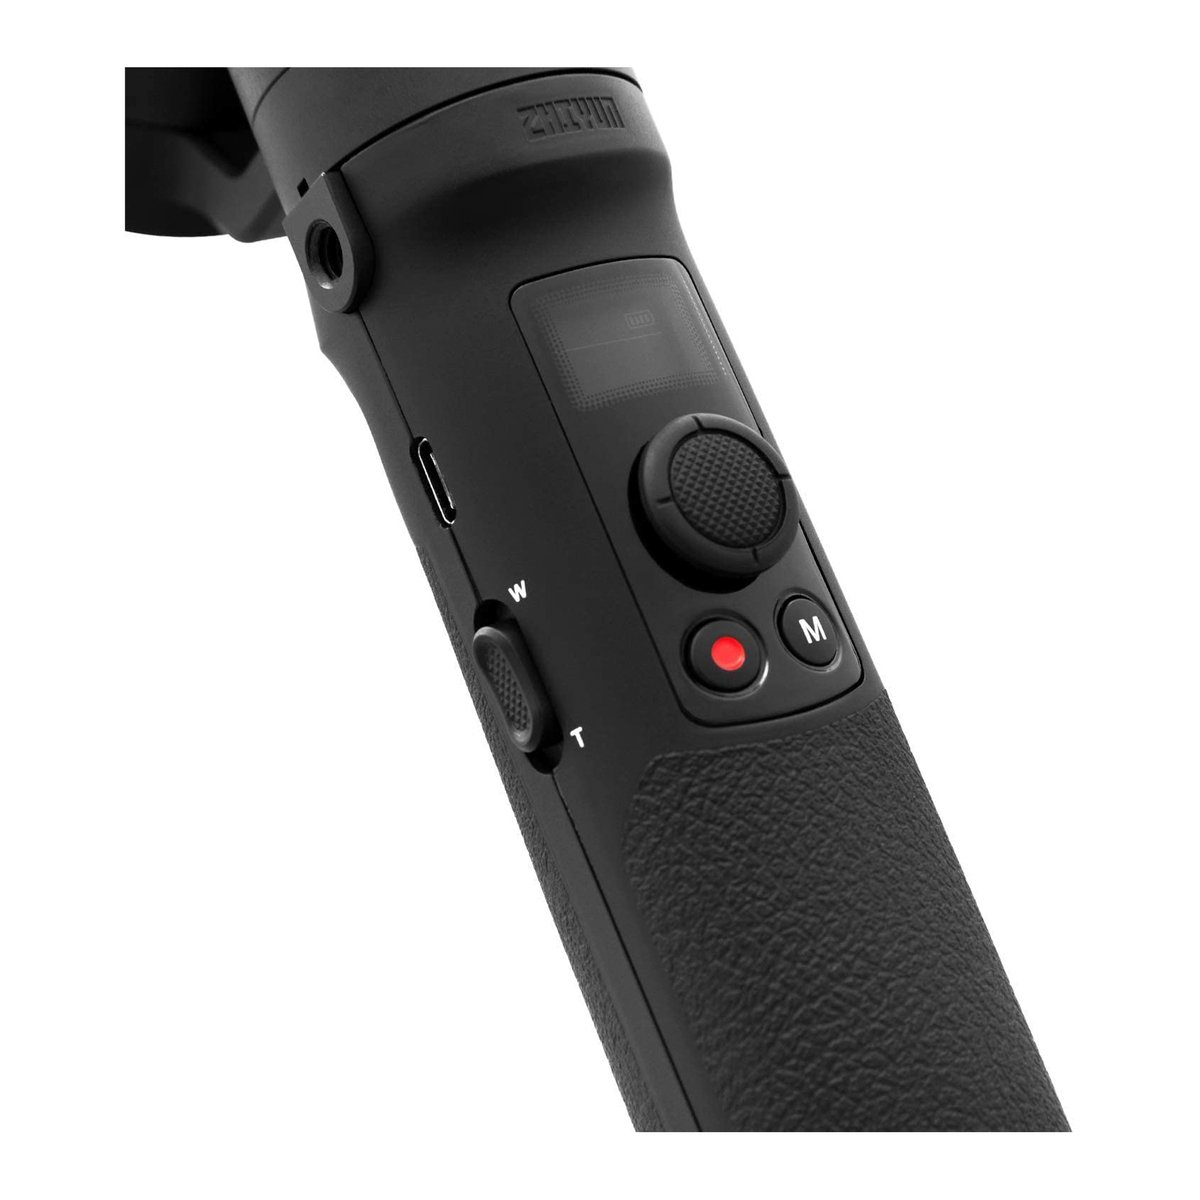 Zhiyun Crane-M2 Handheld 3-Axis Gimbal Stabilizer for Mirrorless Camera, Gopro, Smartphones